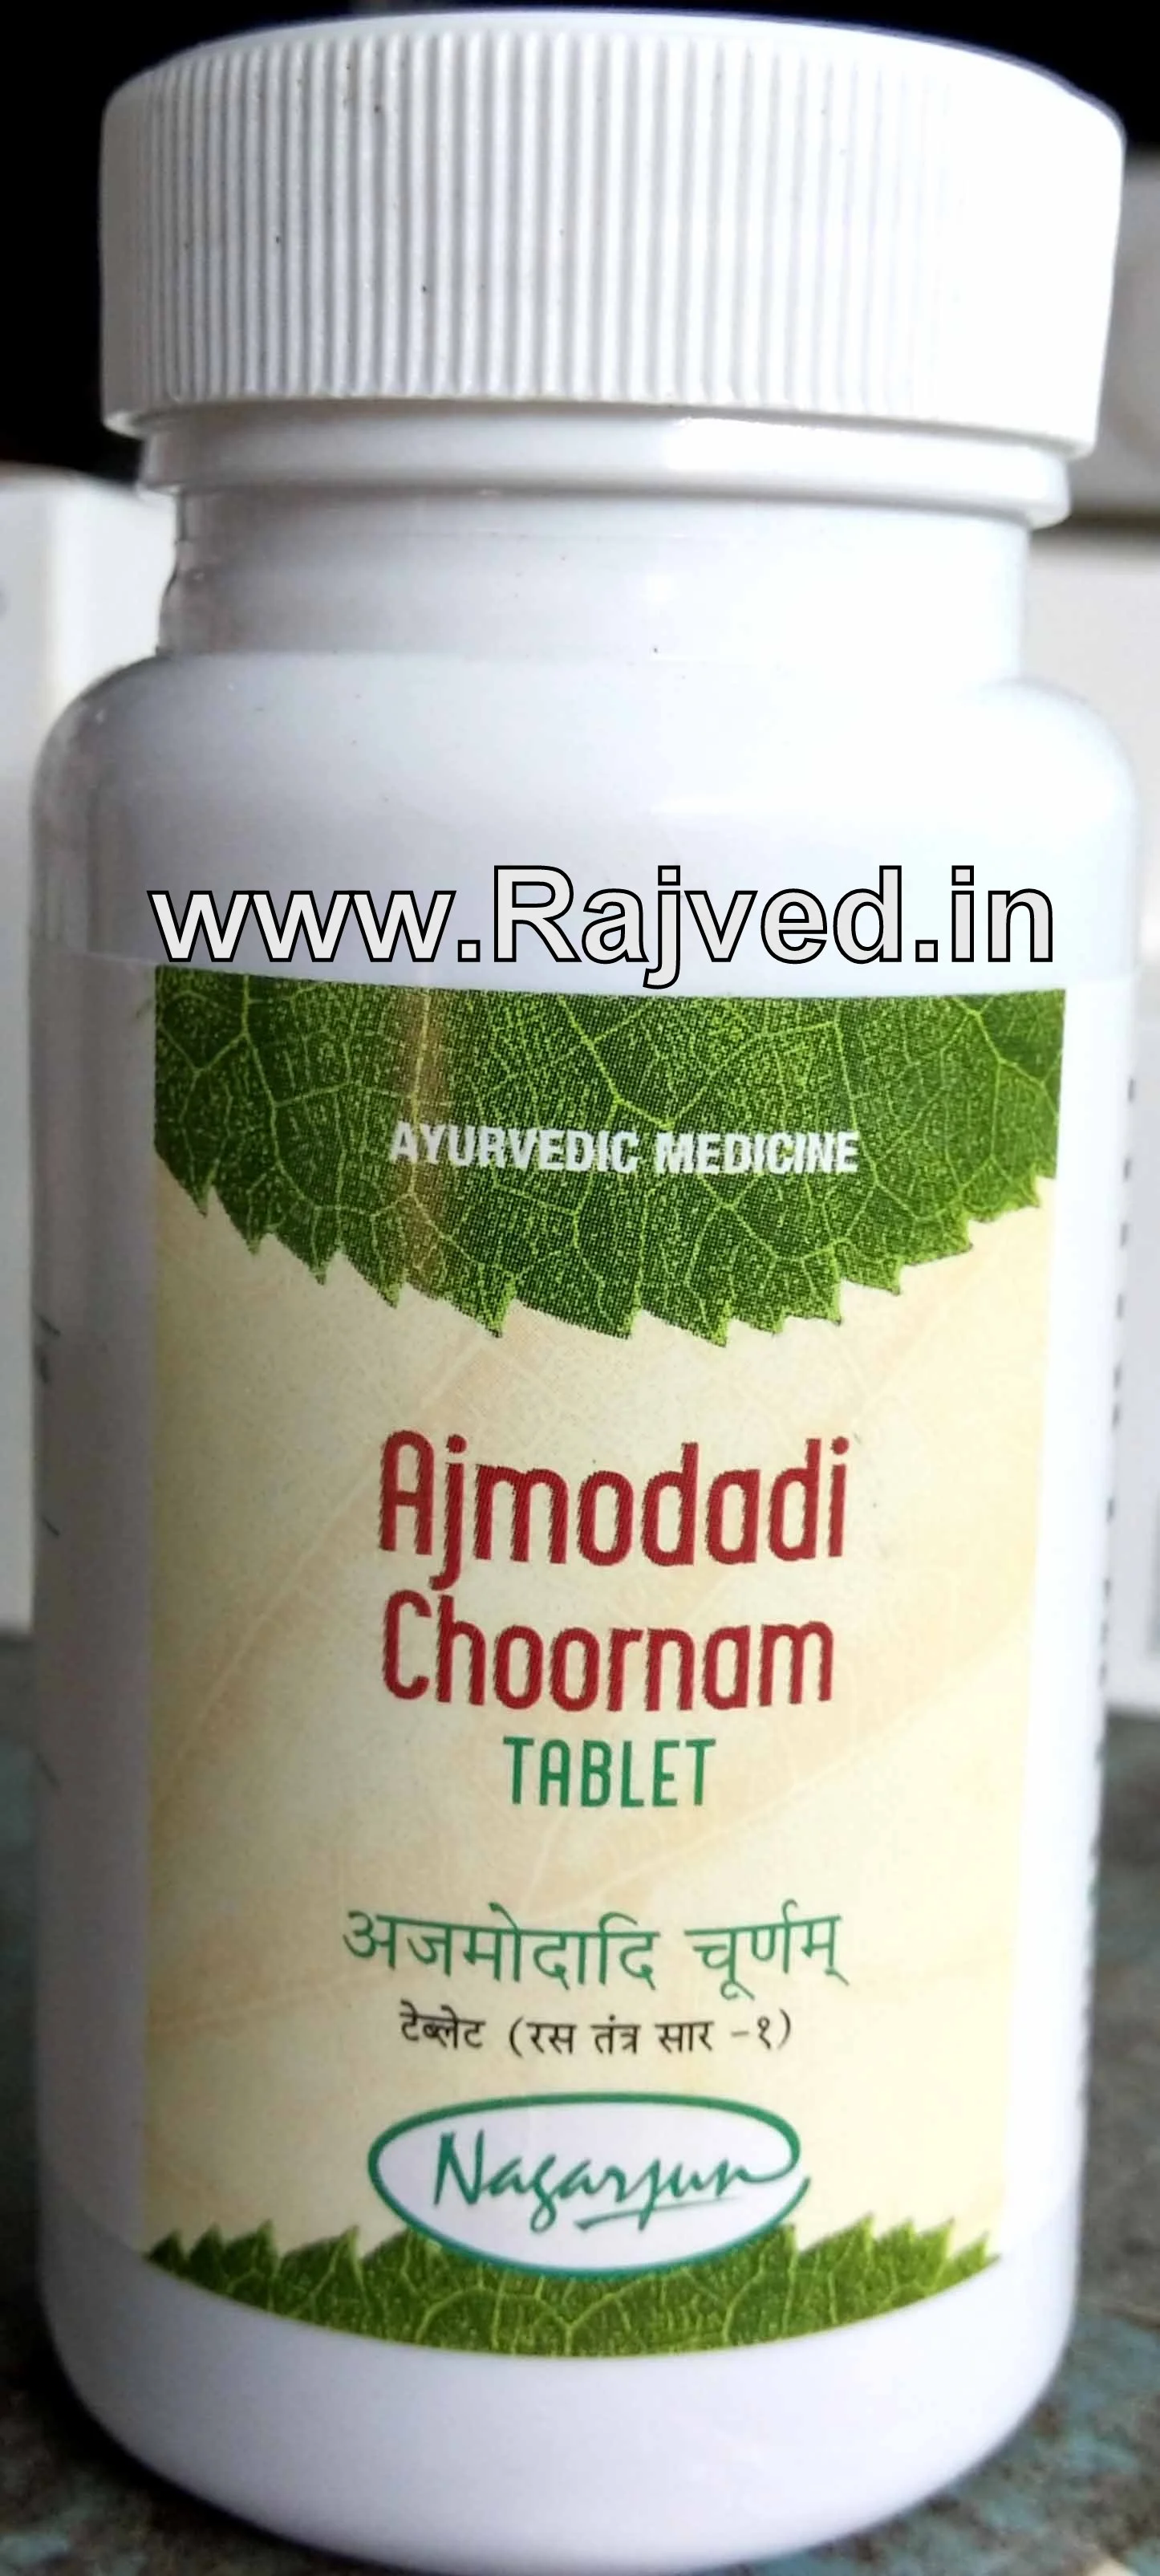 ajmodadi tablet 1000 gm upto 20% off free shipping nagarjun pharma gujarat